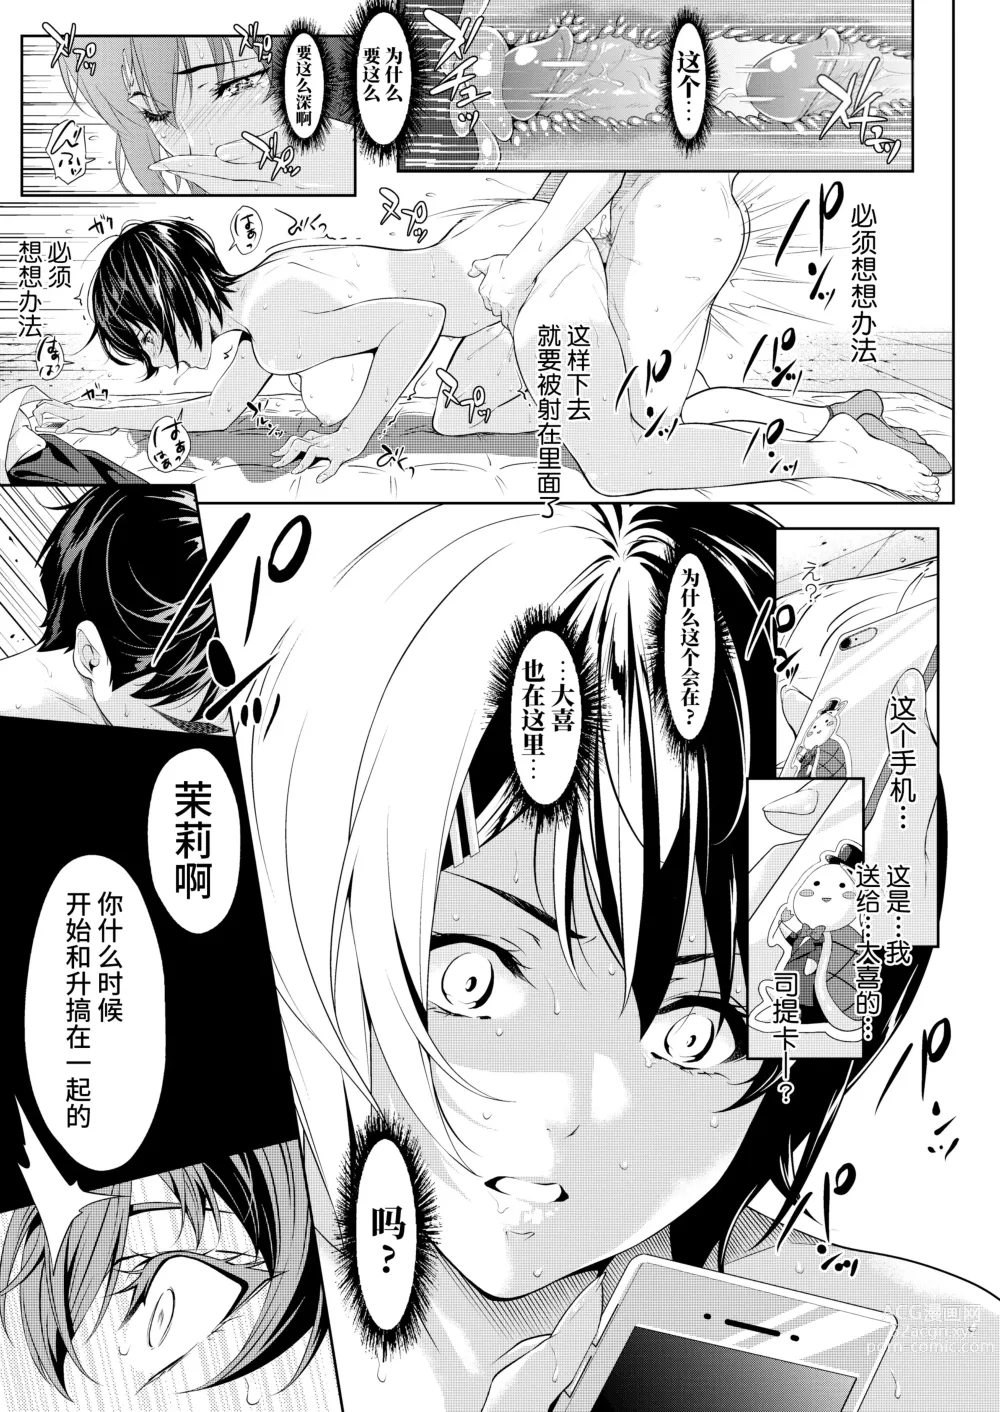 Page 25 of manga 僕たちのゴールライン